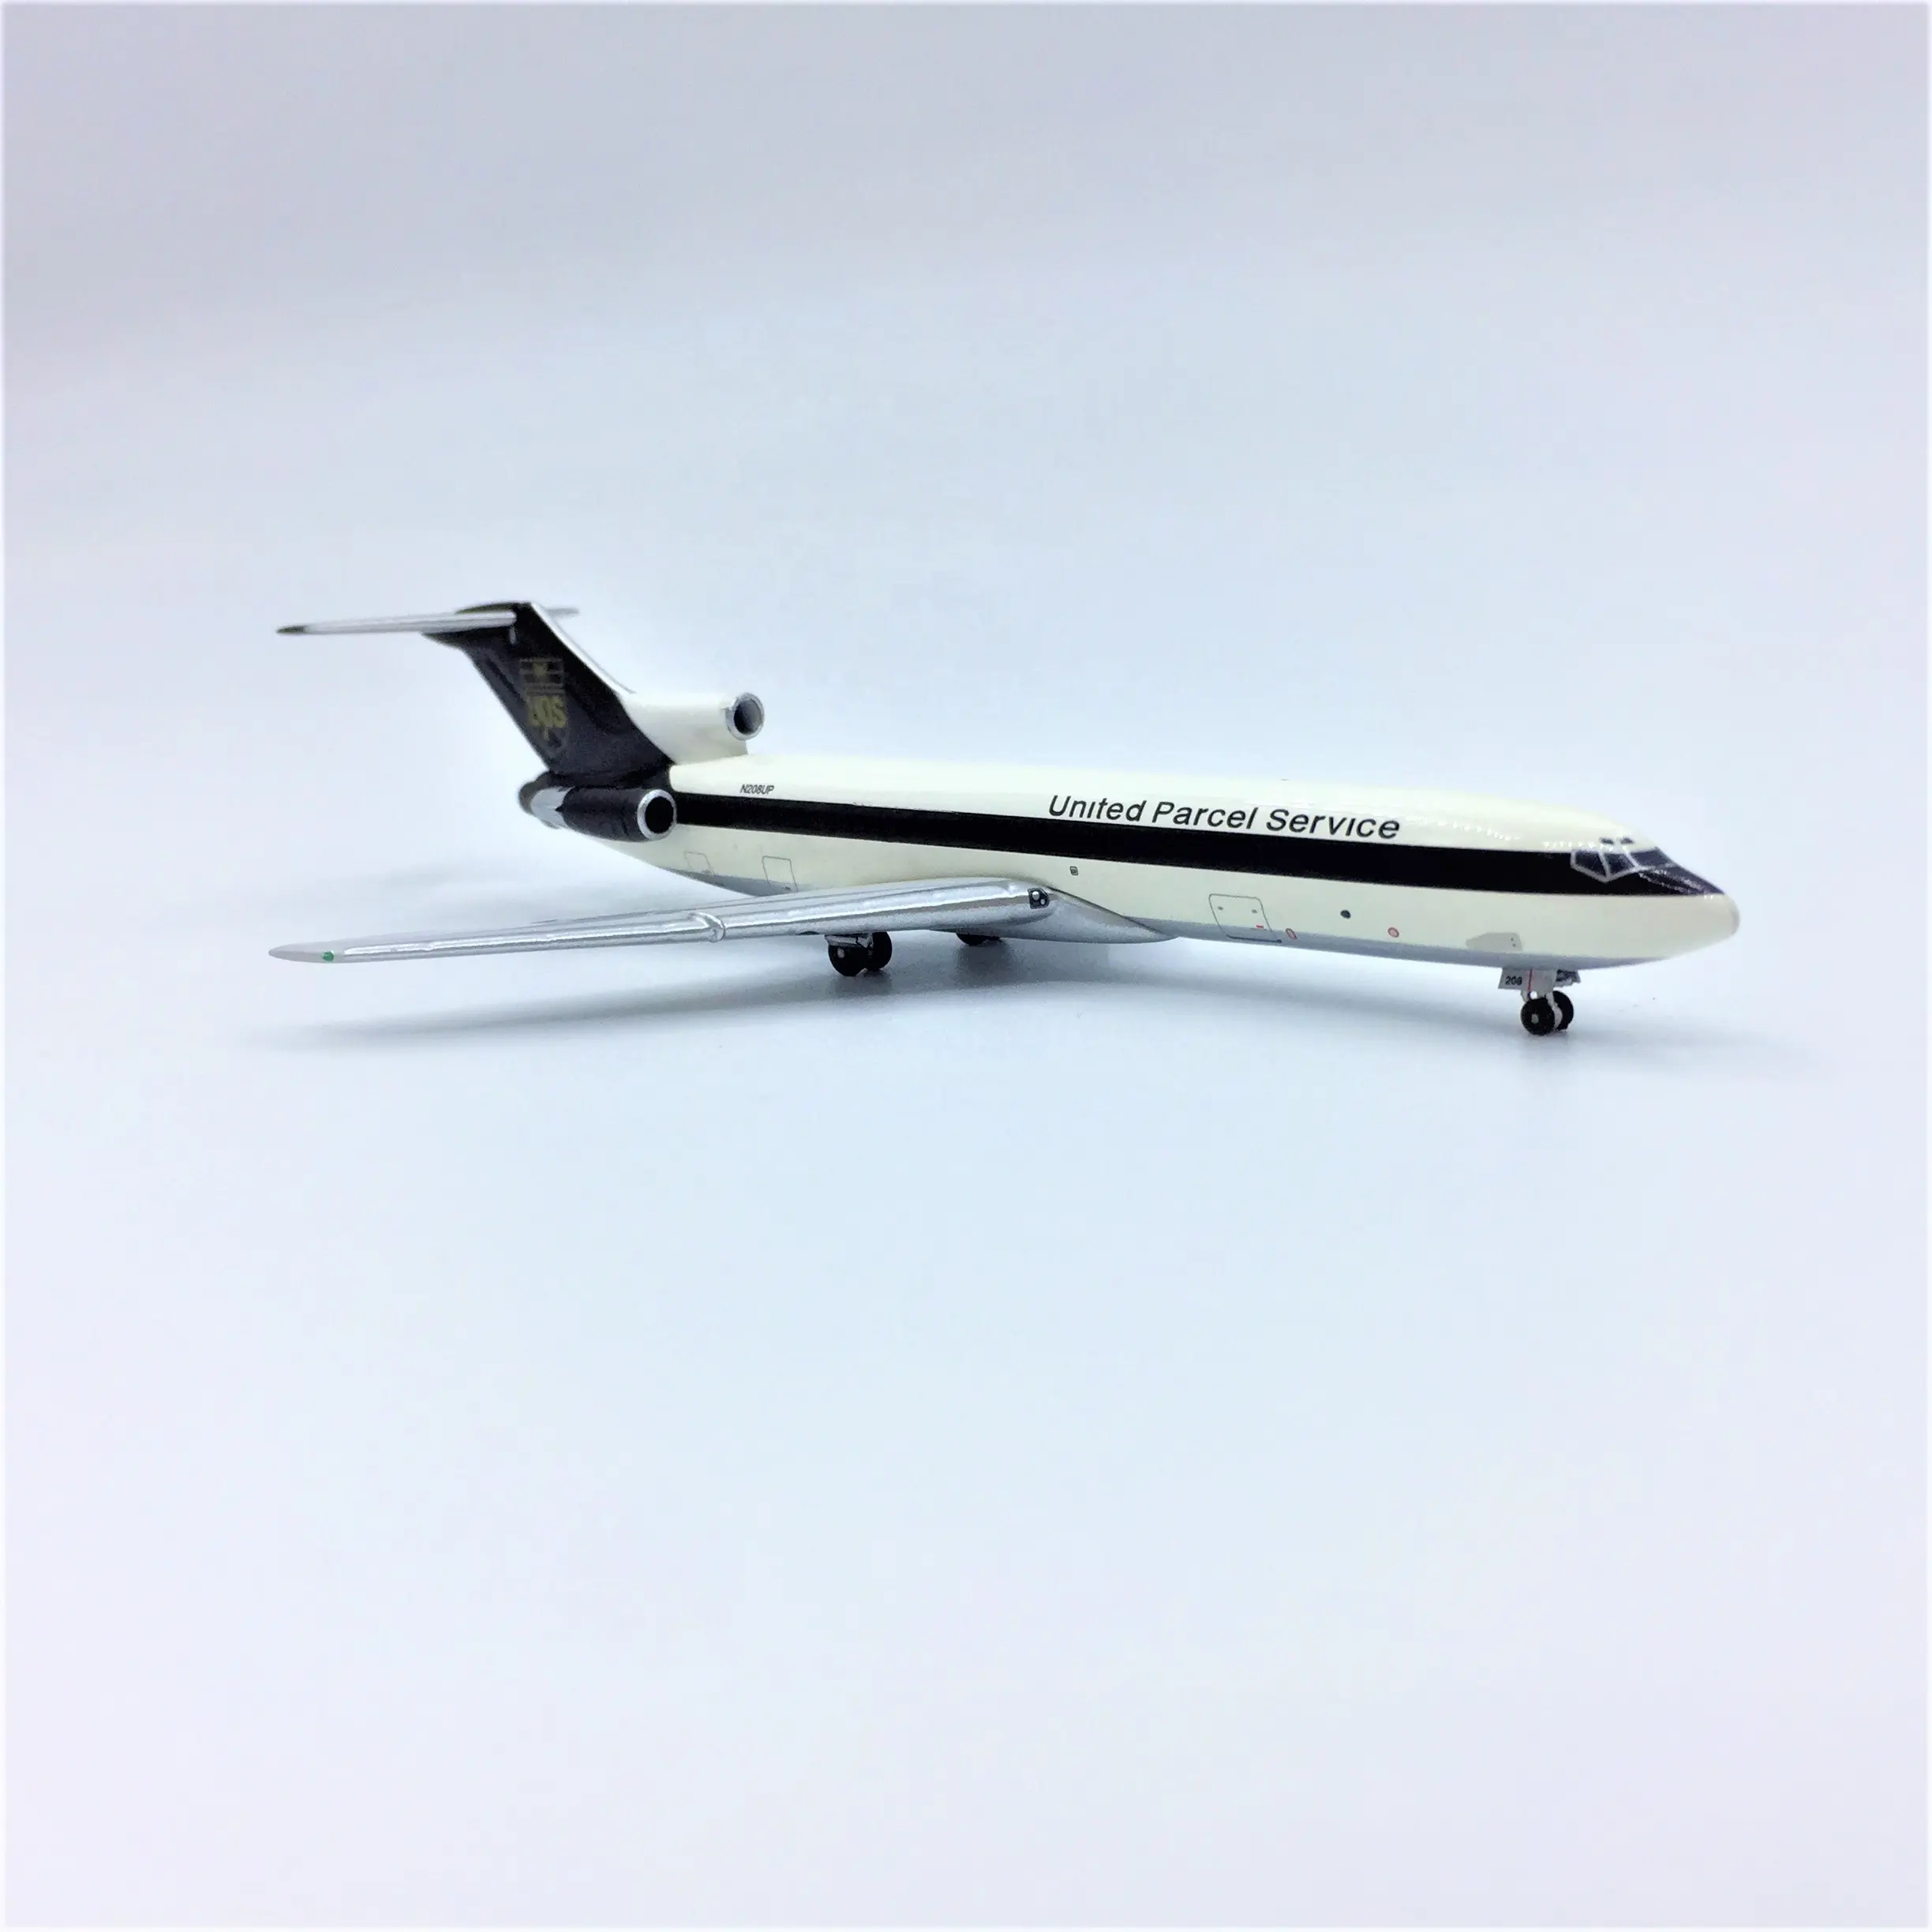 Объединенная служба доставки посылок 727-200 UPS 1:400 модель самолета Модель самолета